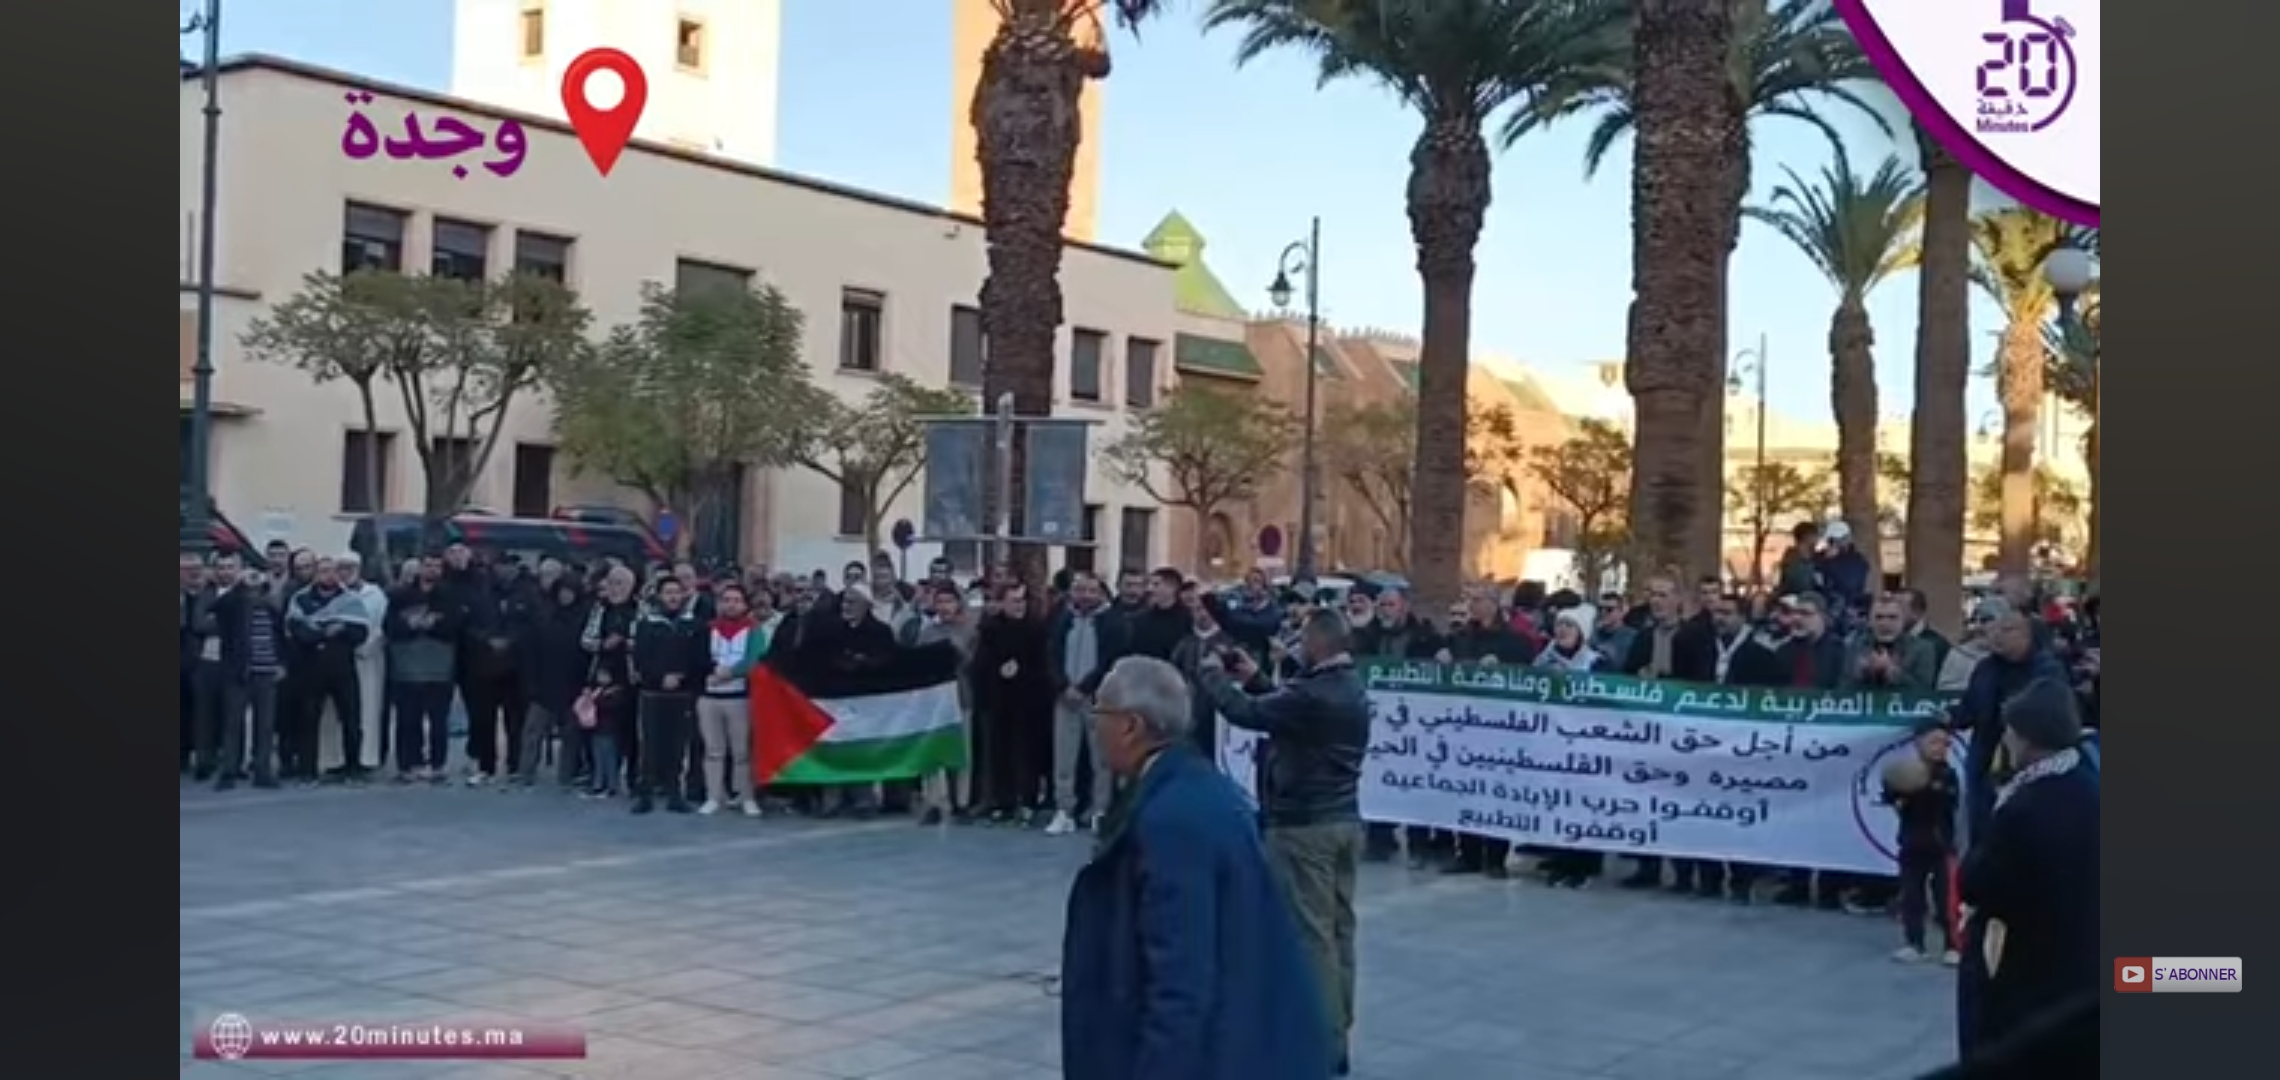 فعاليات مدنية تجسد وقفات احتجاجية تضامنية مع فلسطين